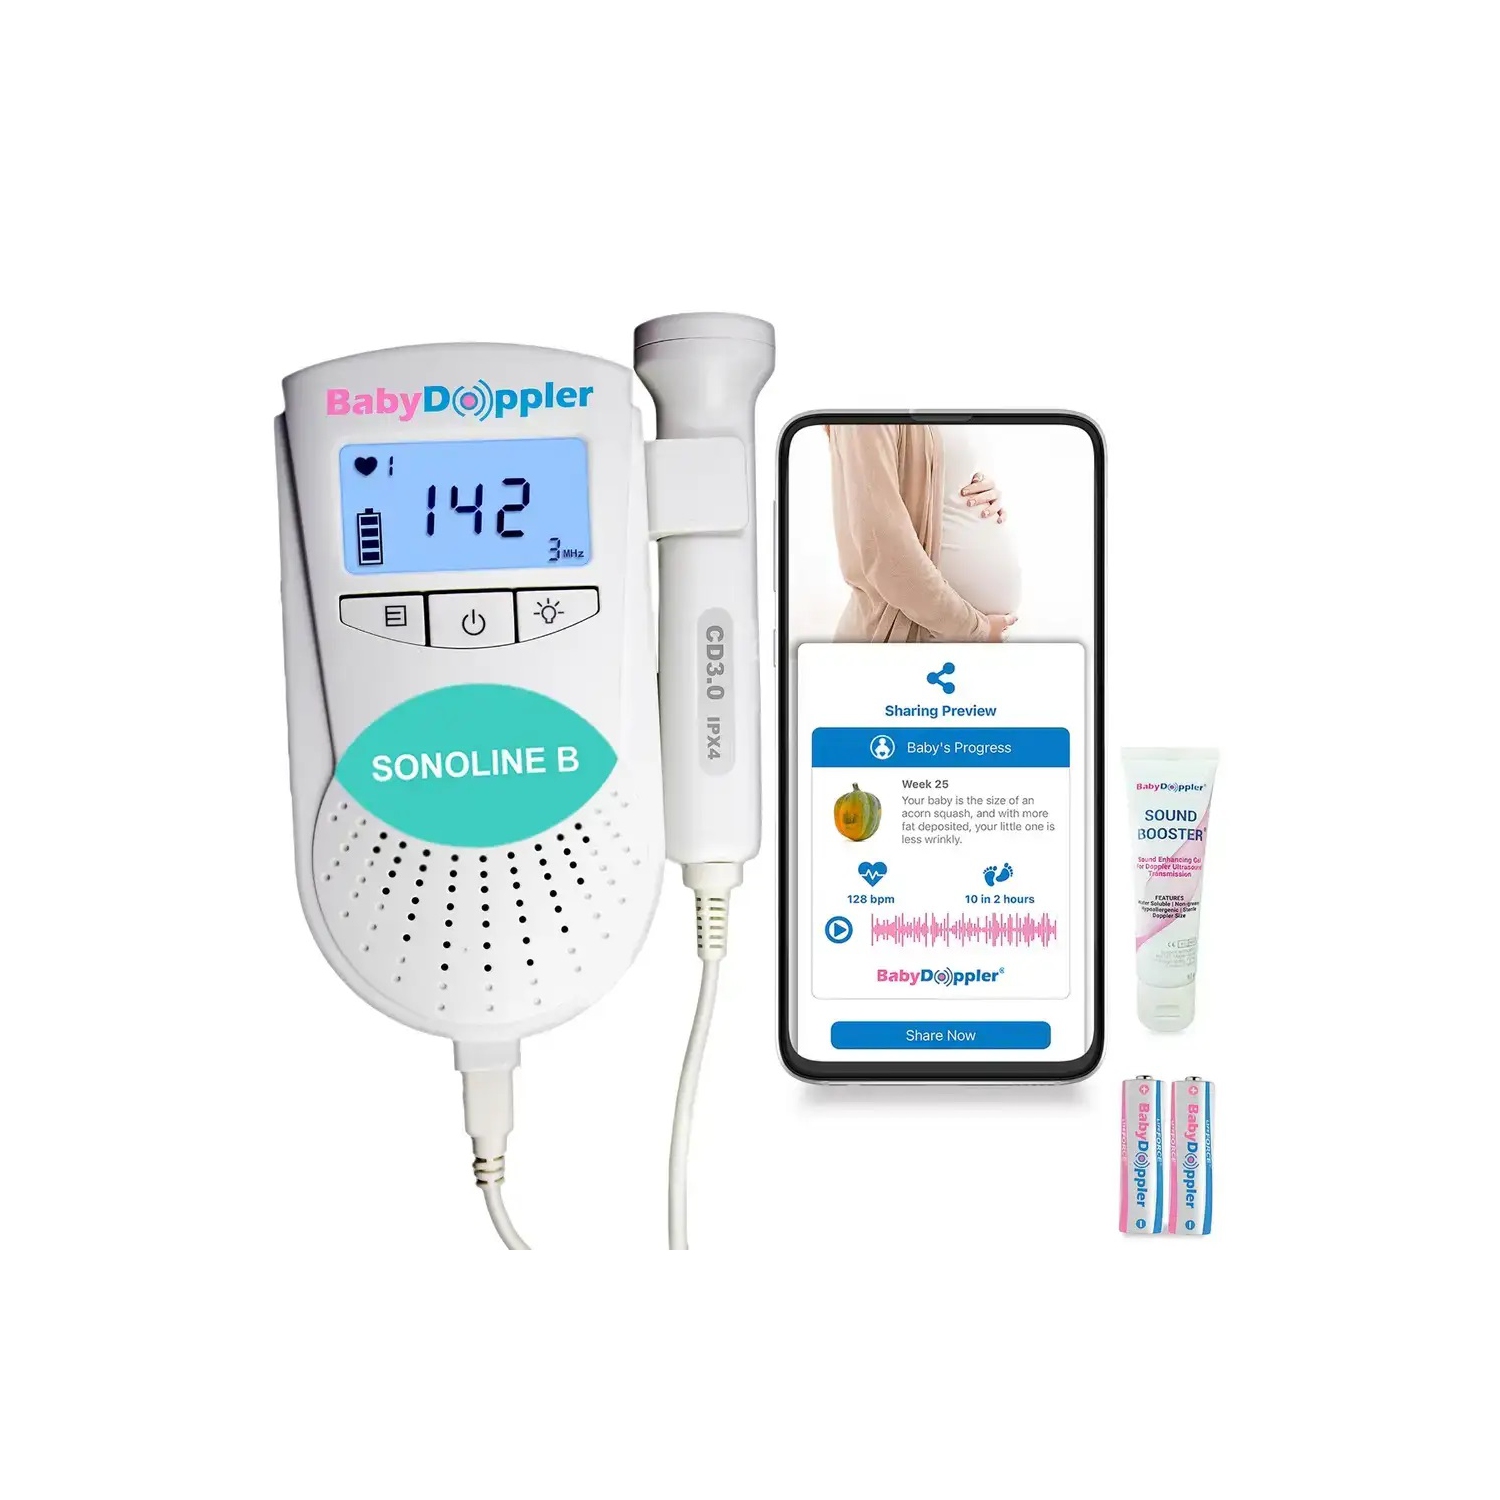 Sonoline B Teal with 3MHz Doppler Probe - The Authentic Fetal Doppler from Baby Doppler